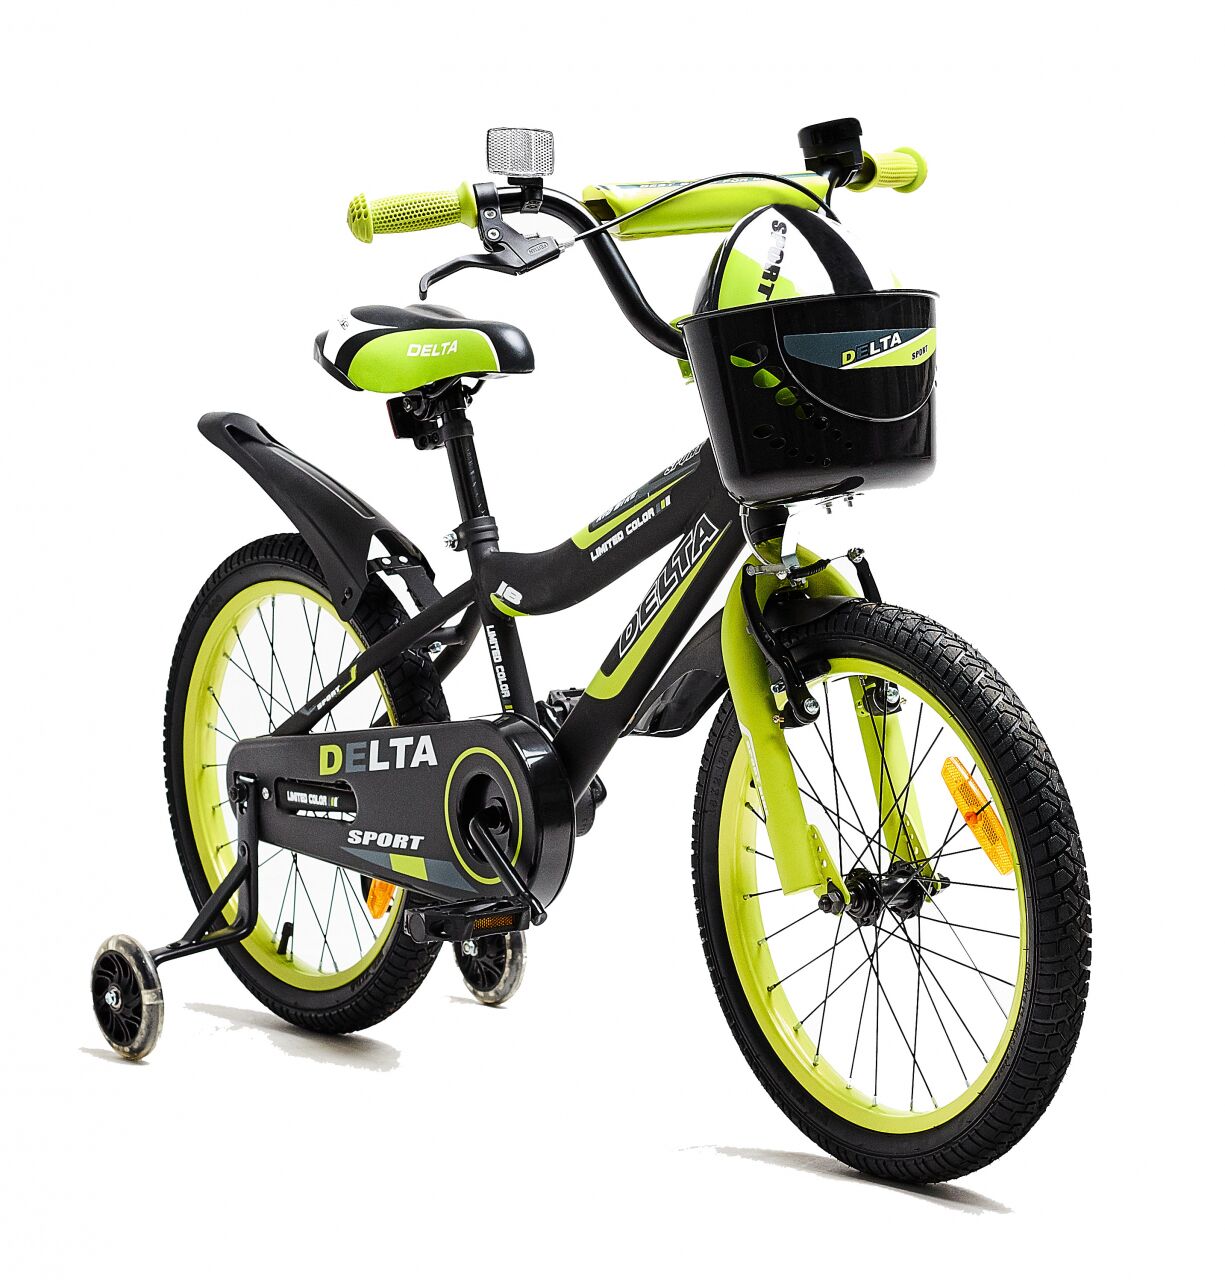 Детский велосипед DELTA Sport 16 (черный/зеленый, 2020)